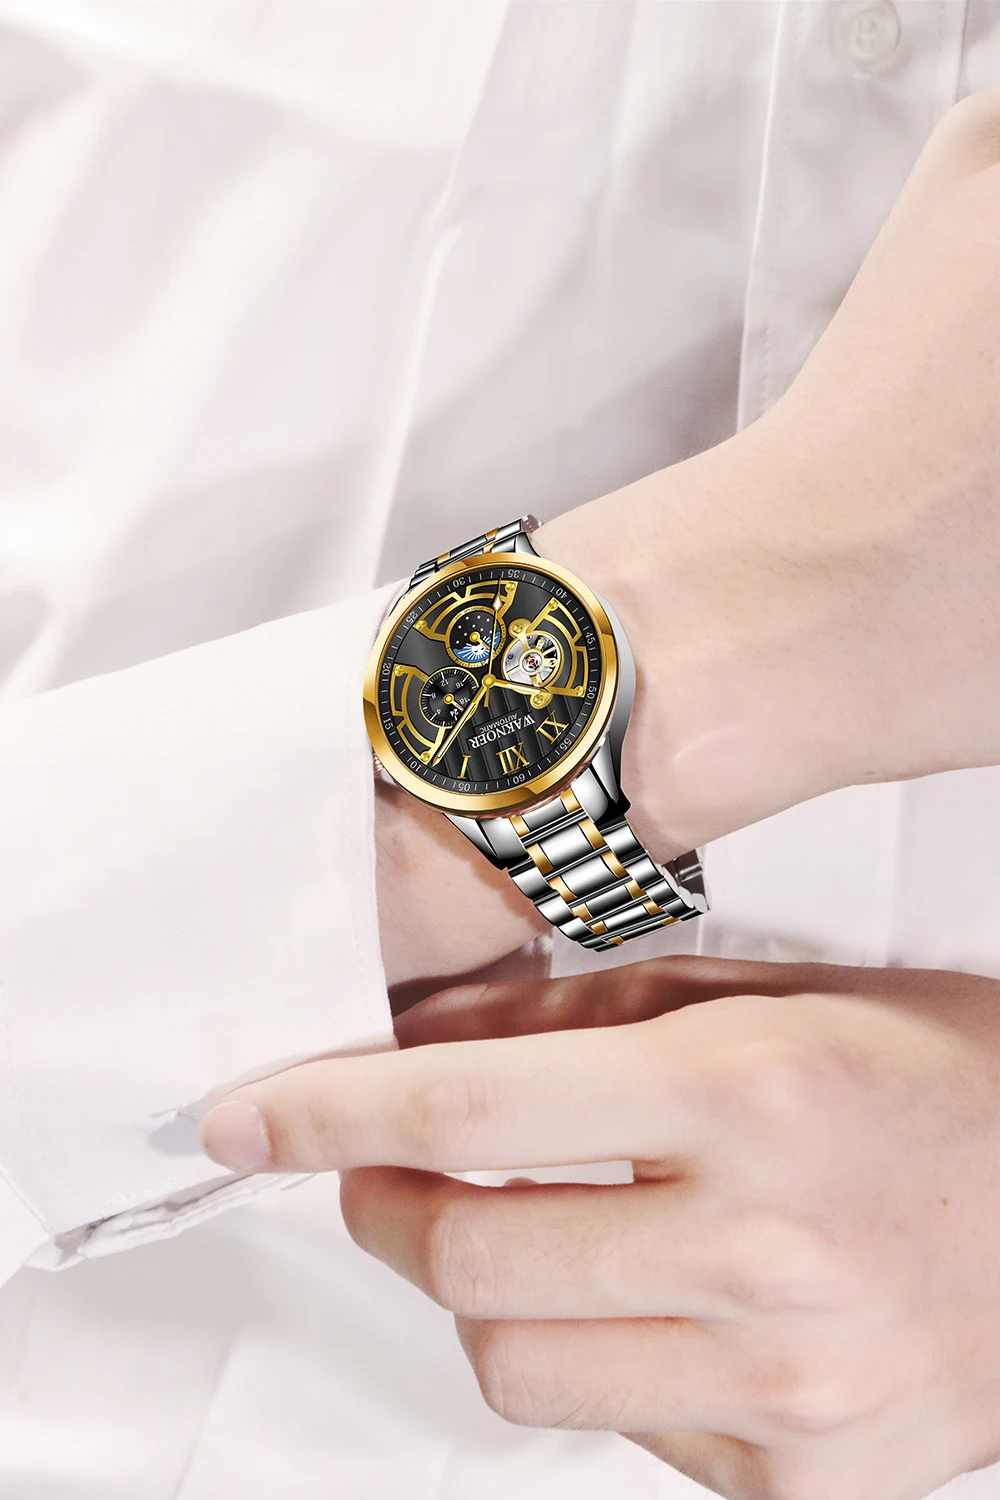 WAKNOER, Топ бренд, роскошные деловые часы, мужские автоматические светящиеся часы, мужские водонепроницаемые механические часы с турбийоном